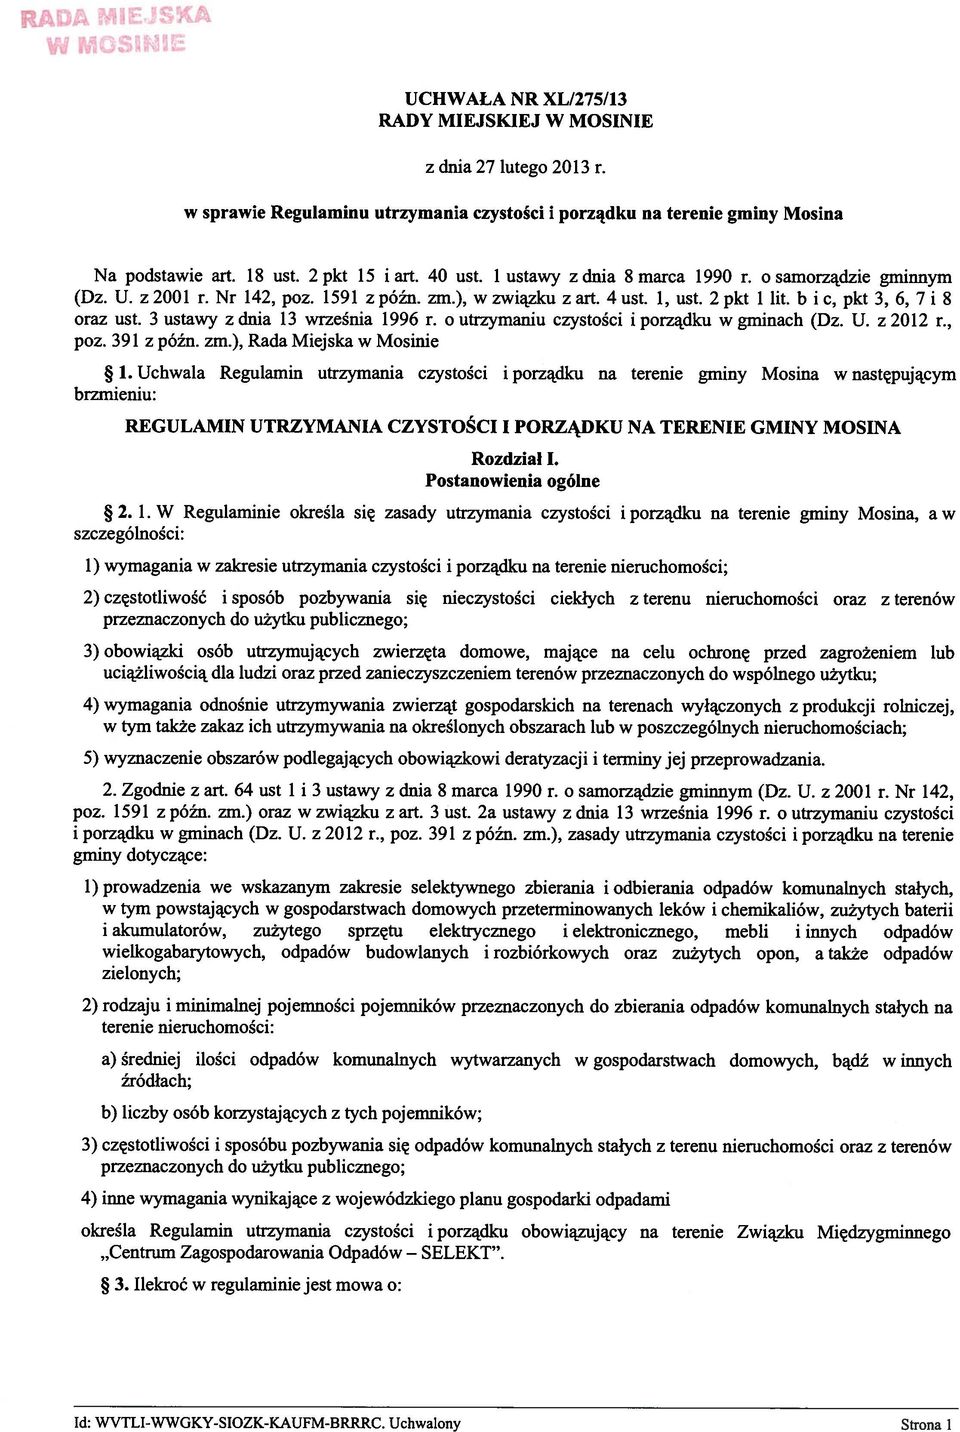 b i c, pkt 3, 6, 7 i 8 oraz ust. 3 ustawy z dnia 13 września 1996 r. o utrzymaniu czystości i porządku w gminach (Dz. U. z 2012 r., poz. 391 z późn. zm.), Rada Miejska w Mosinie 1.